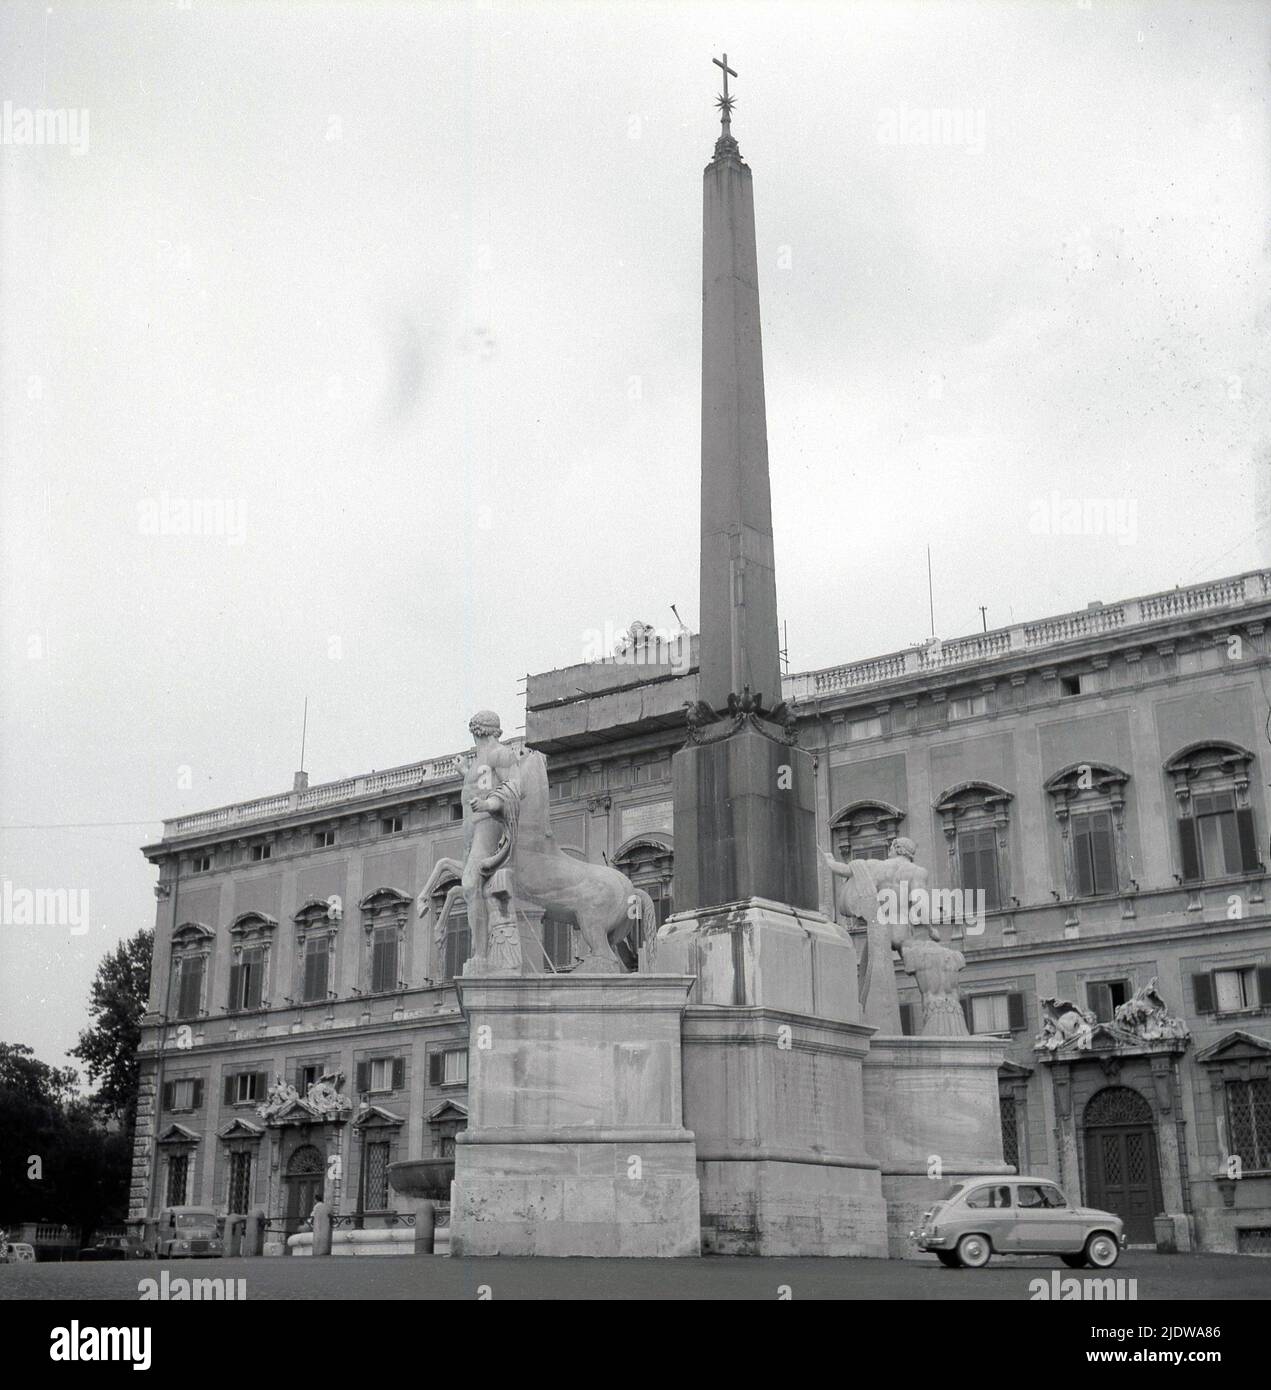 1950s, historique, grande colonne de pierre avec religieux, croix chrétienne sur le dessus avec des statures de centurions et des chevaux à la base, Naples, Italie. Voiture Fiat 500 garée à côté. Banque D'Images